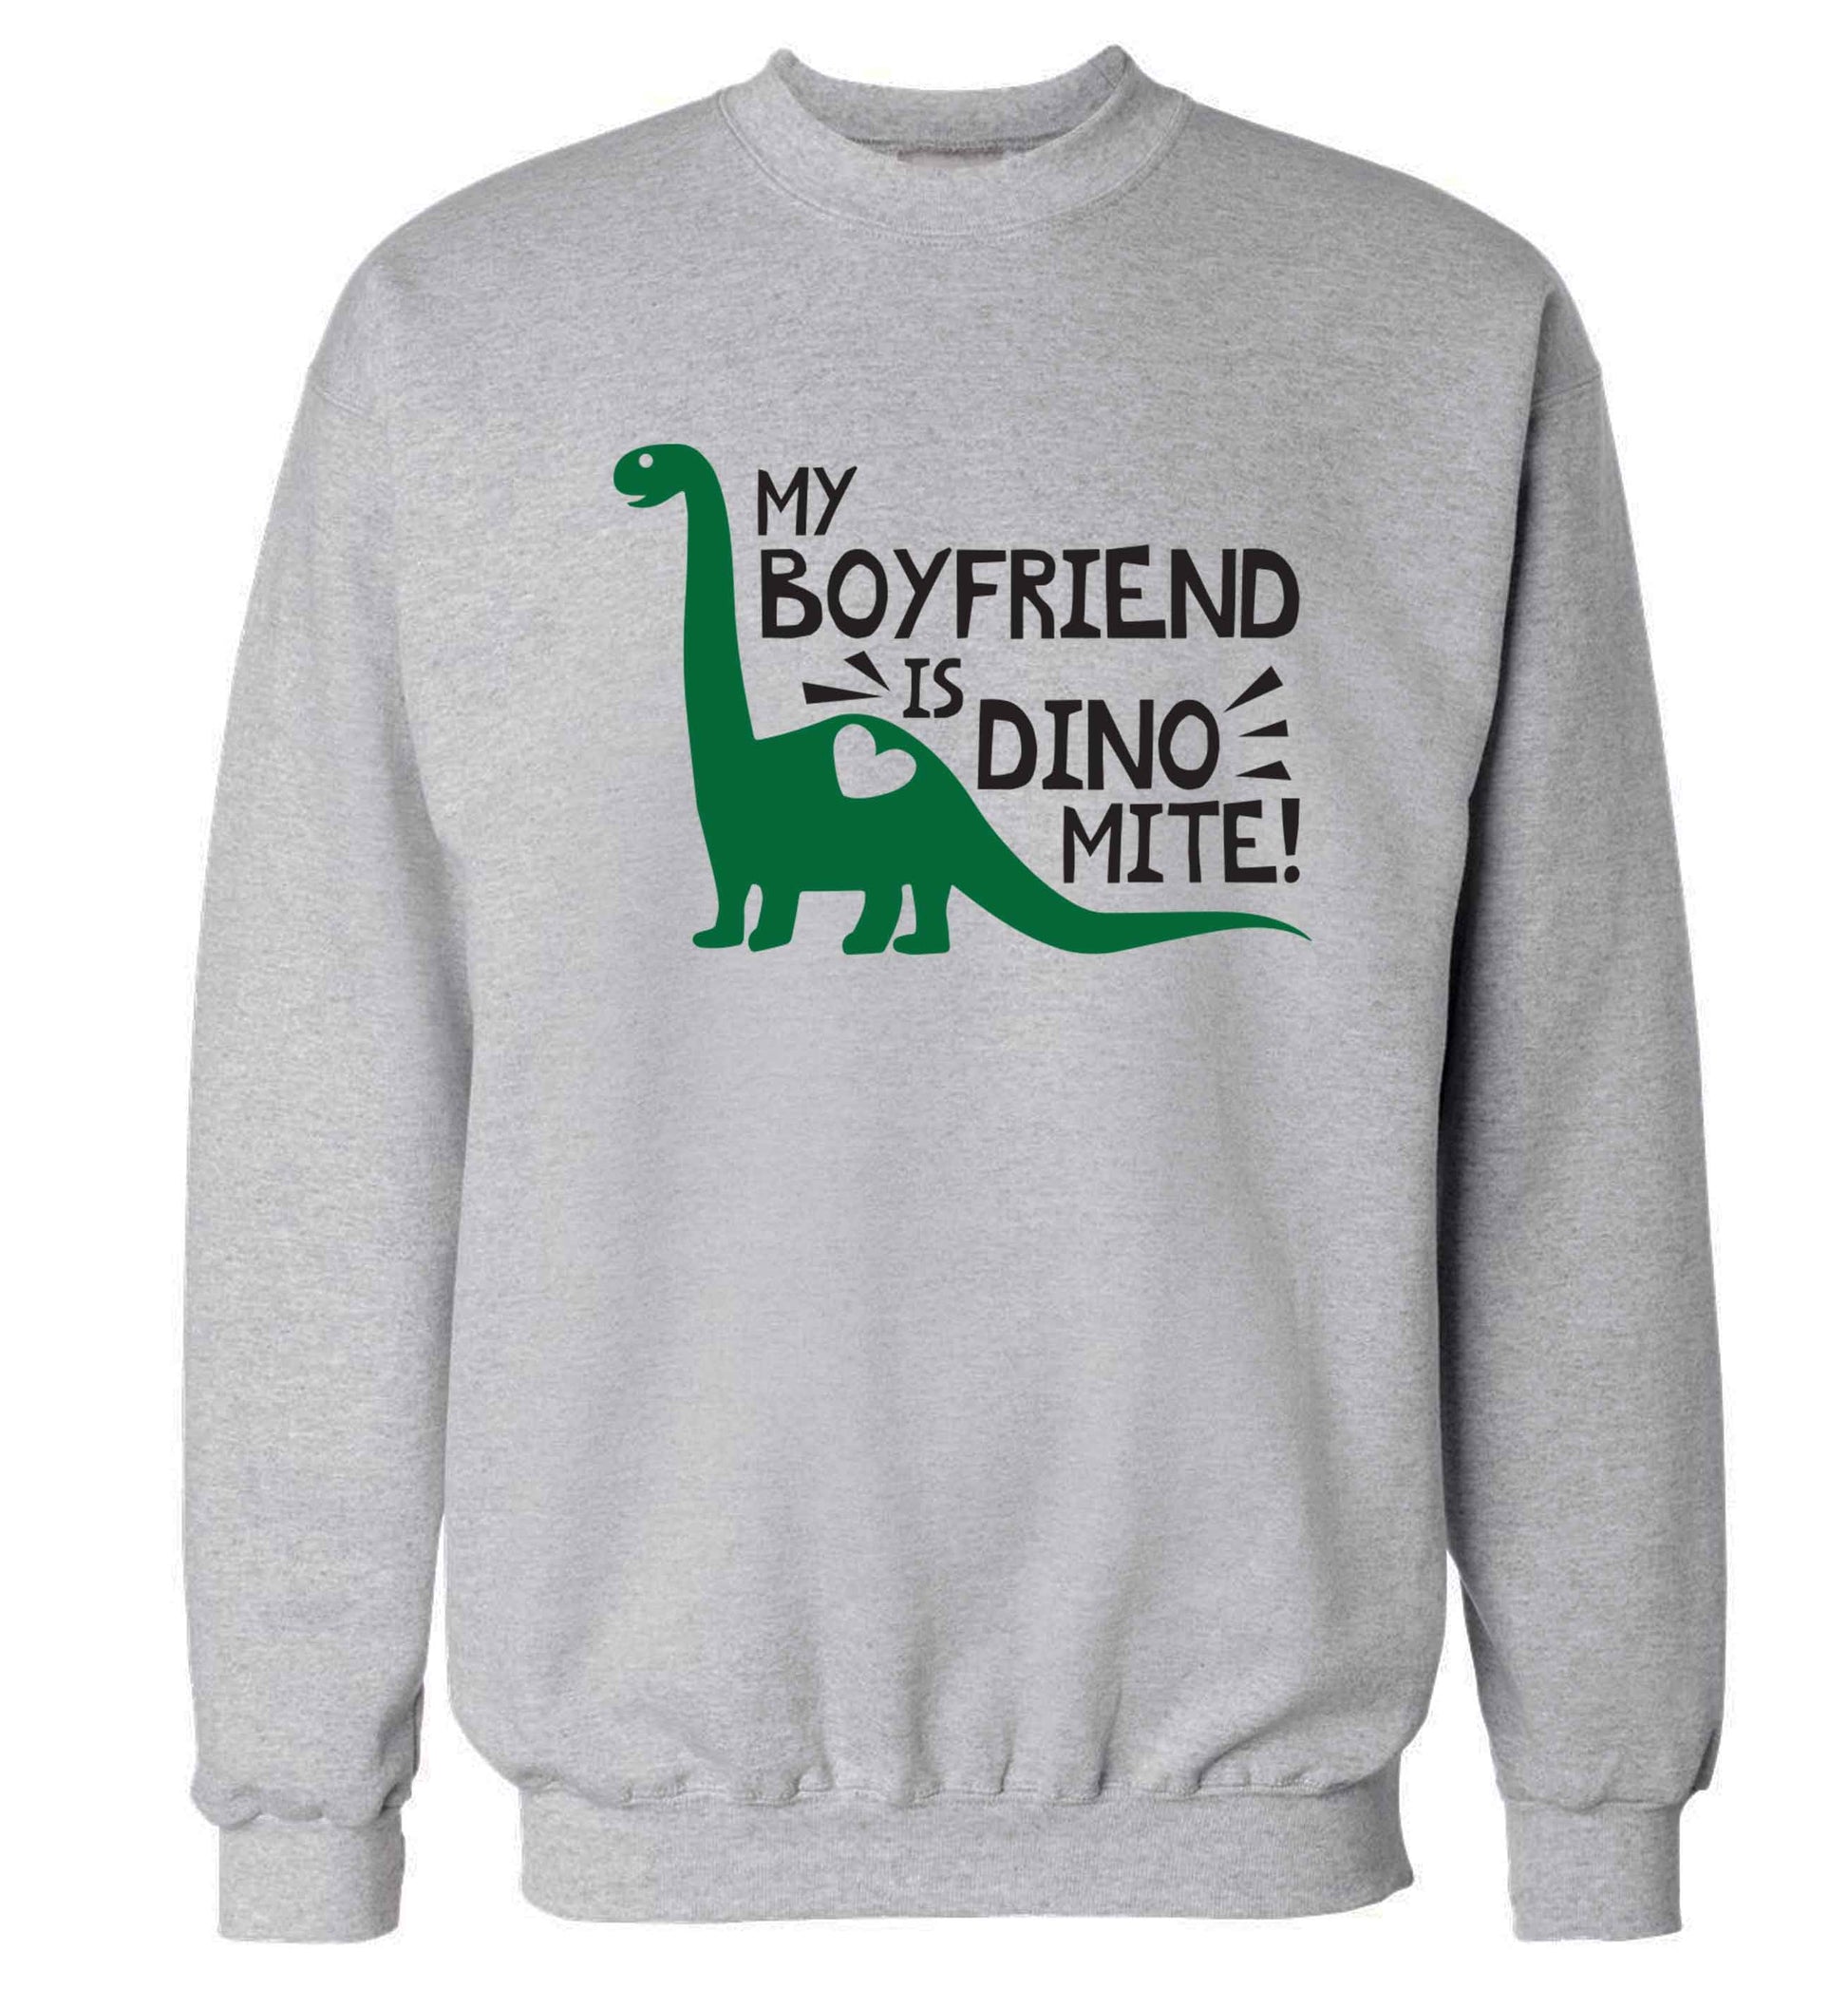 My boyfriend is dinomite! Adult's unisex grey Sweater 2XL